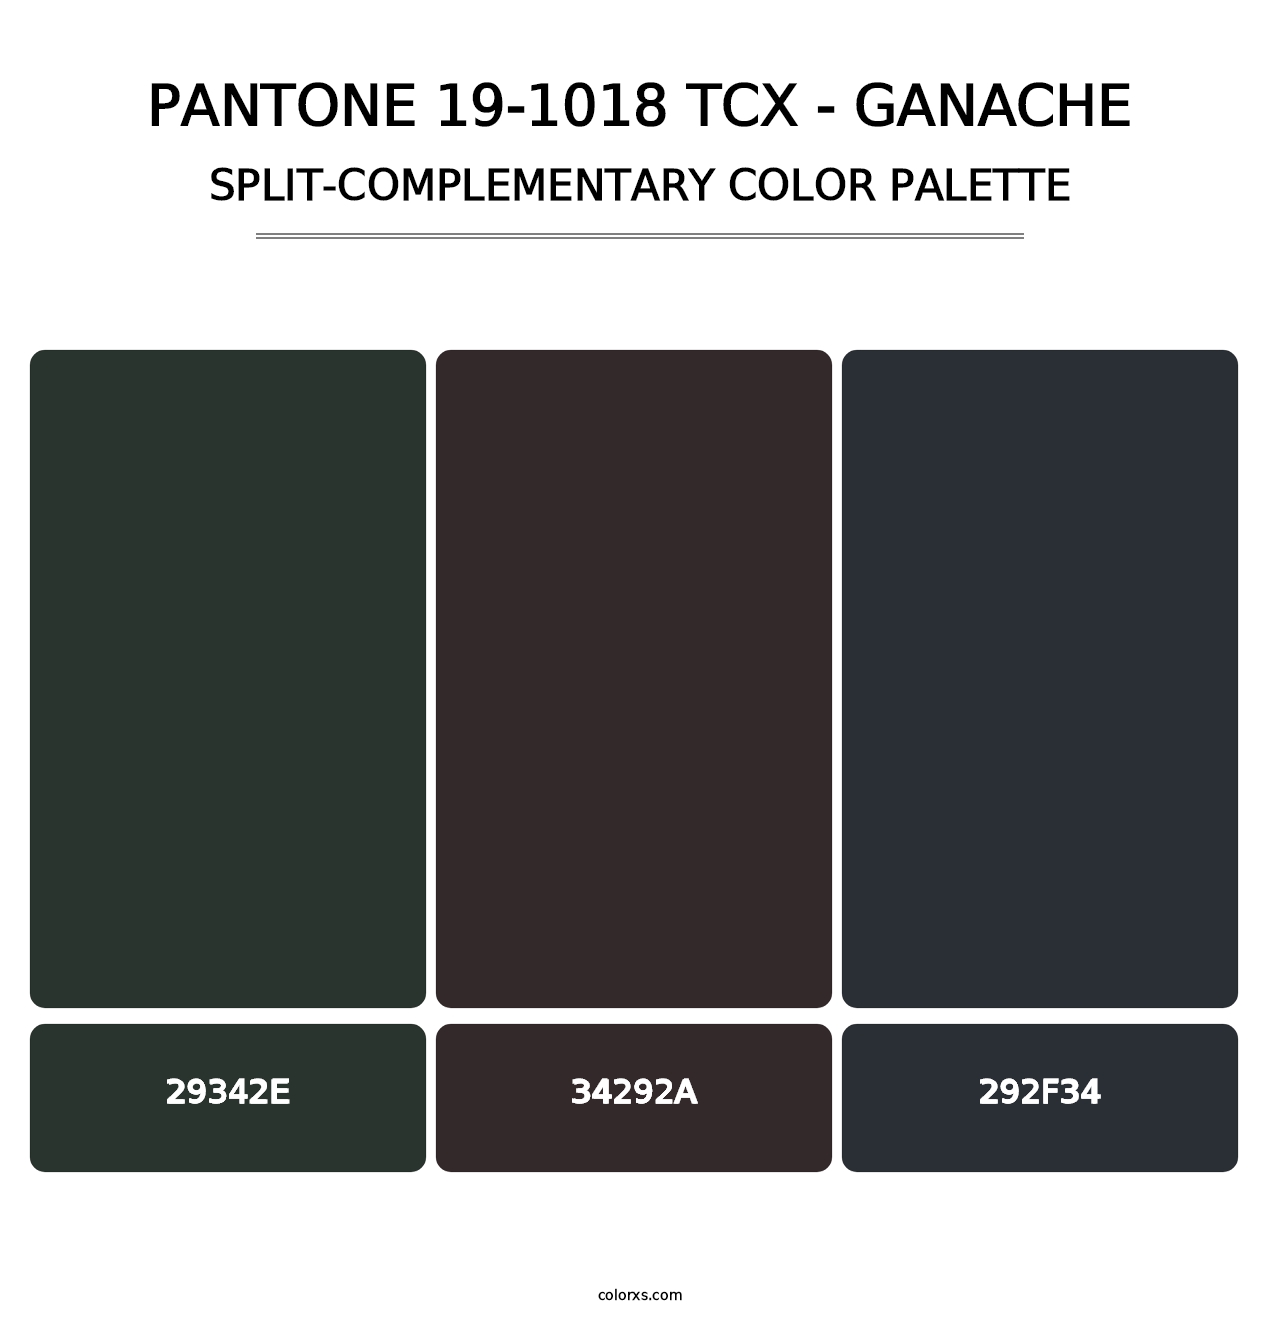 PANTONE 19-1018 TCX - Ganache - Split-Complementary Color Palette